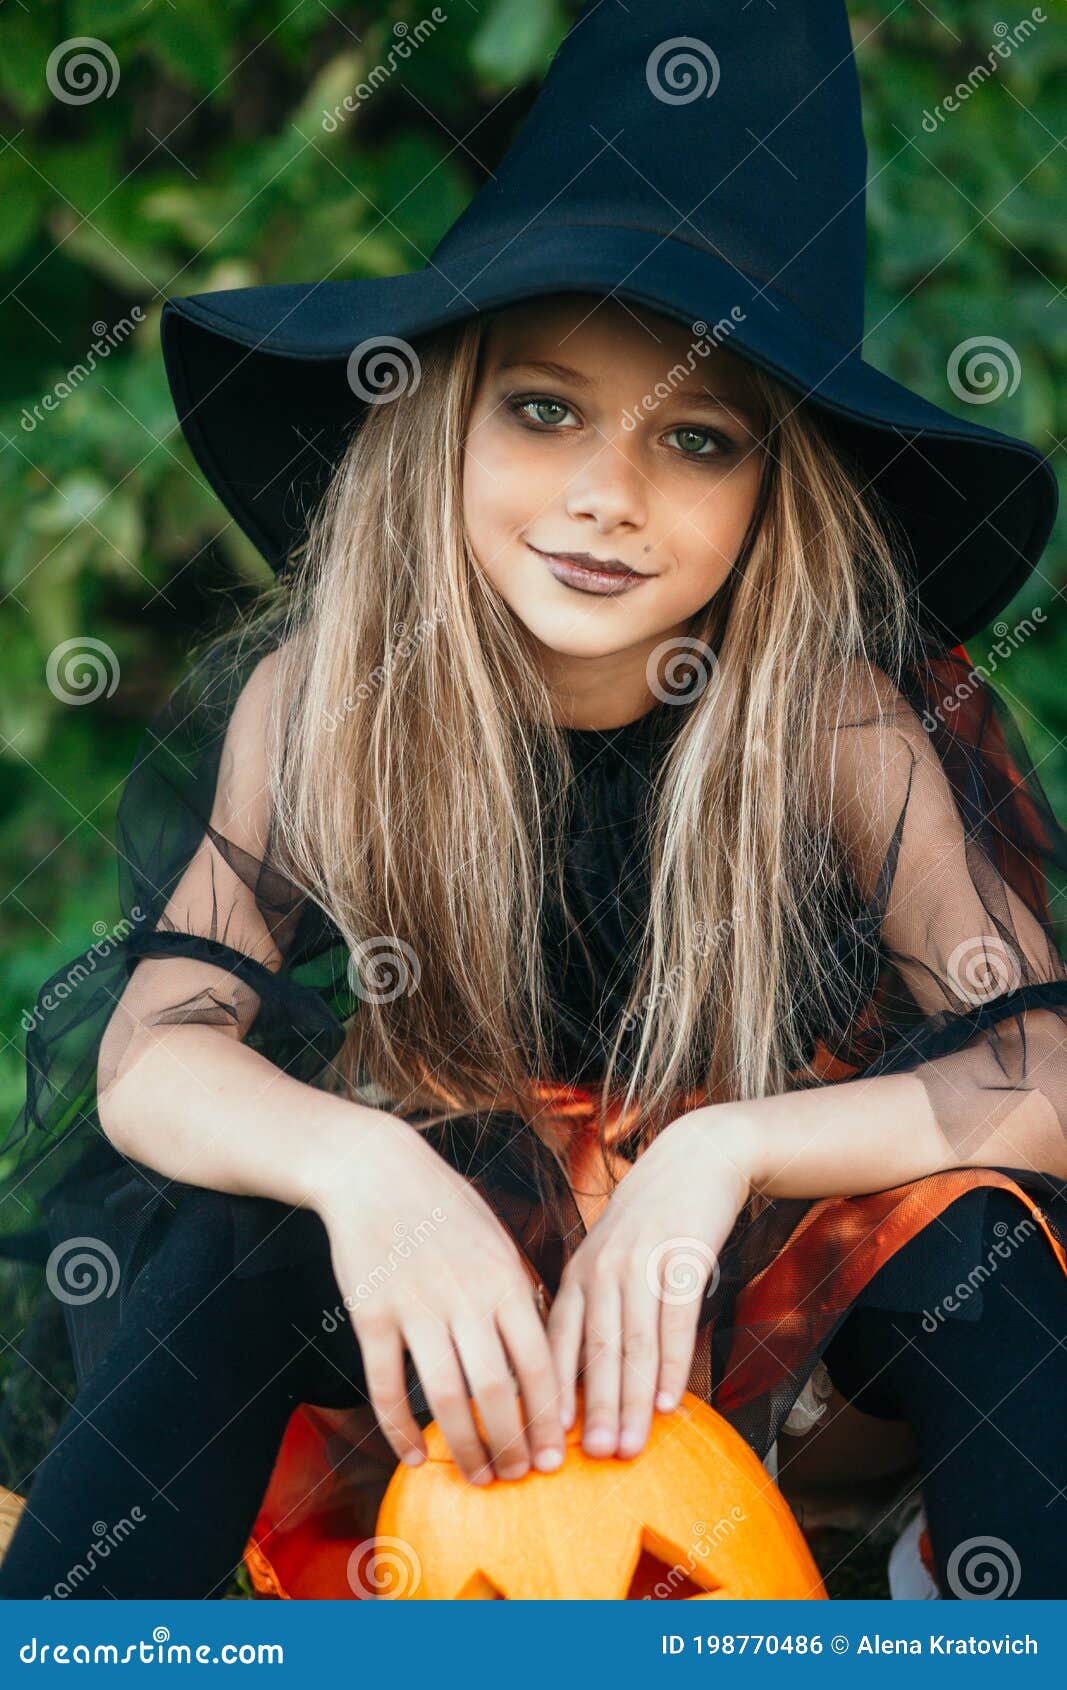 Retrato De Closeup De Niñita Con Disfraz De Bruja De Halloween Al Aire  Libre Foto de archivo - Imagen de exterior, horror: 198770486